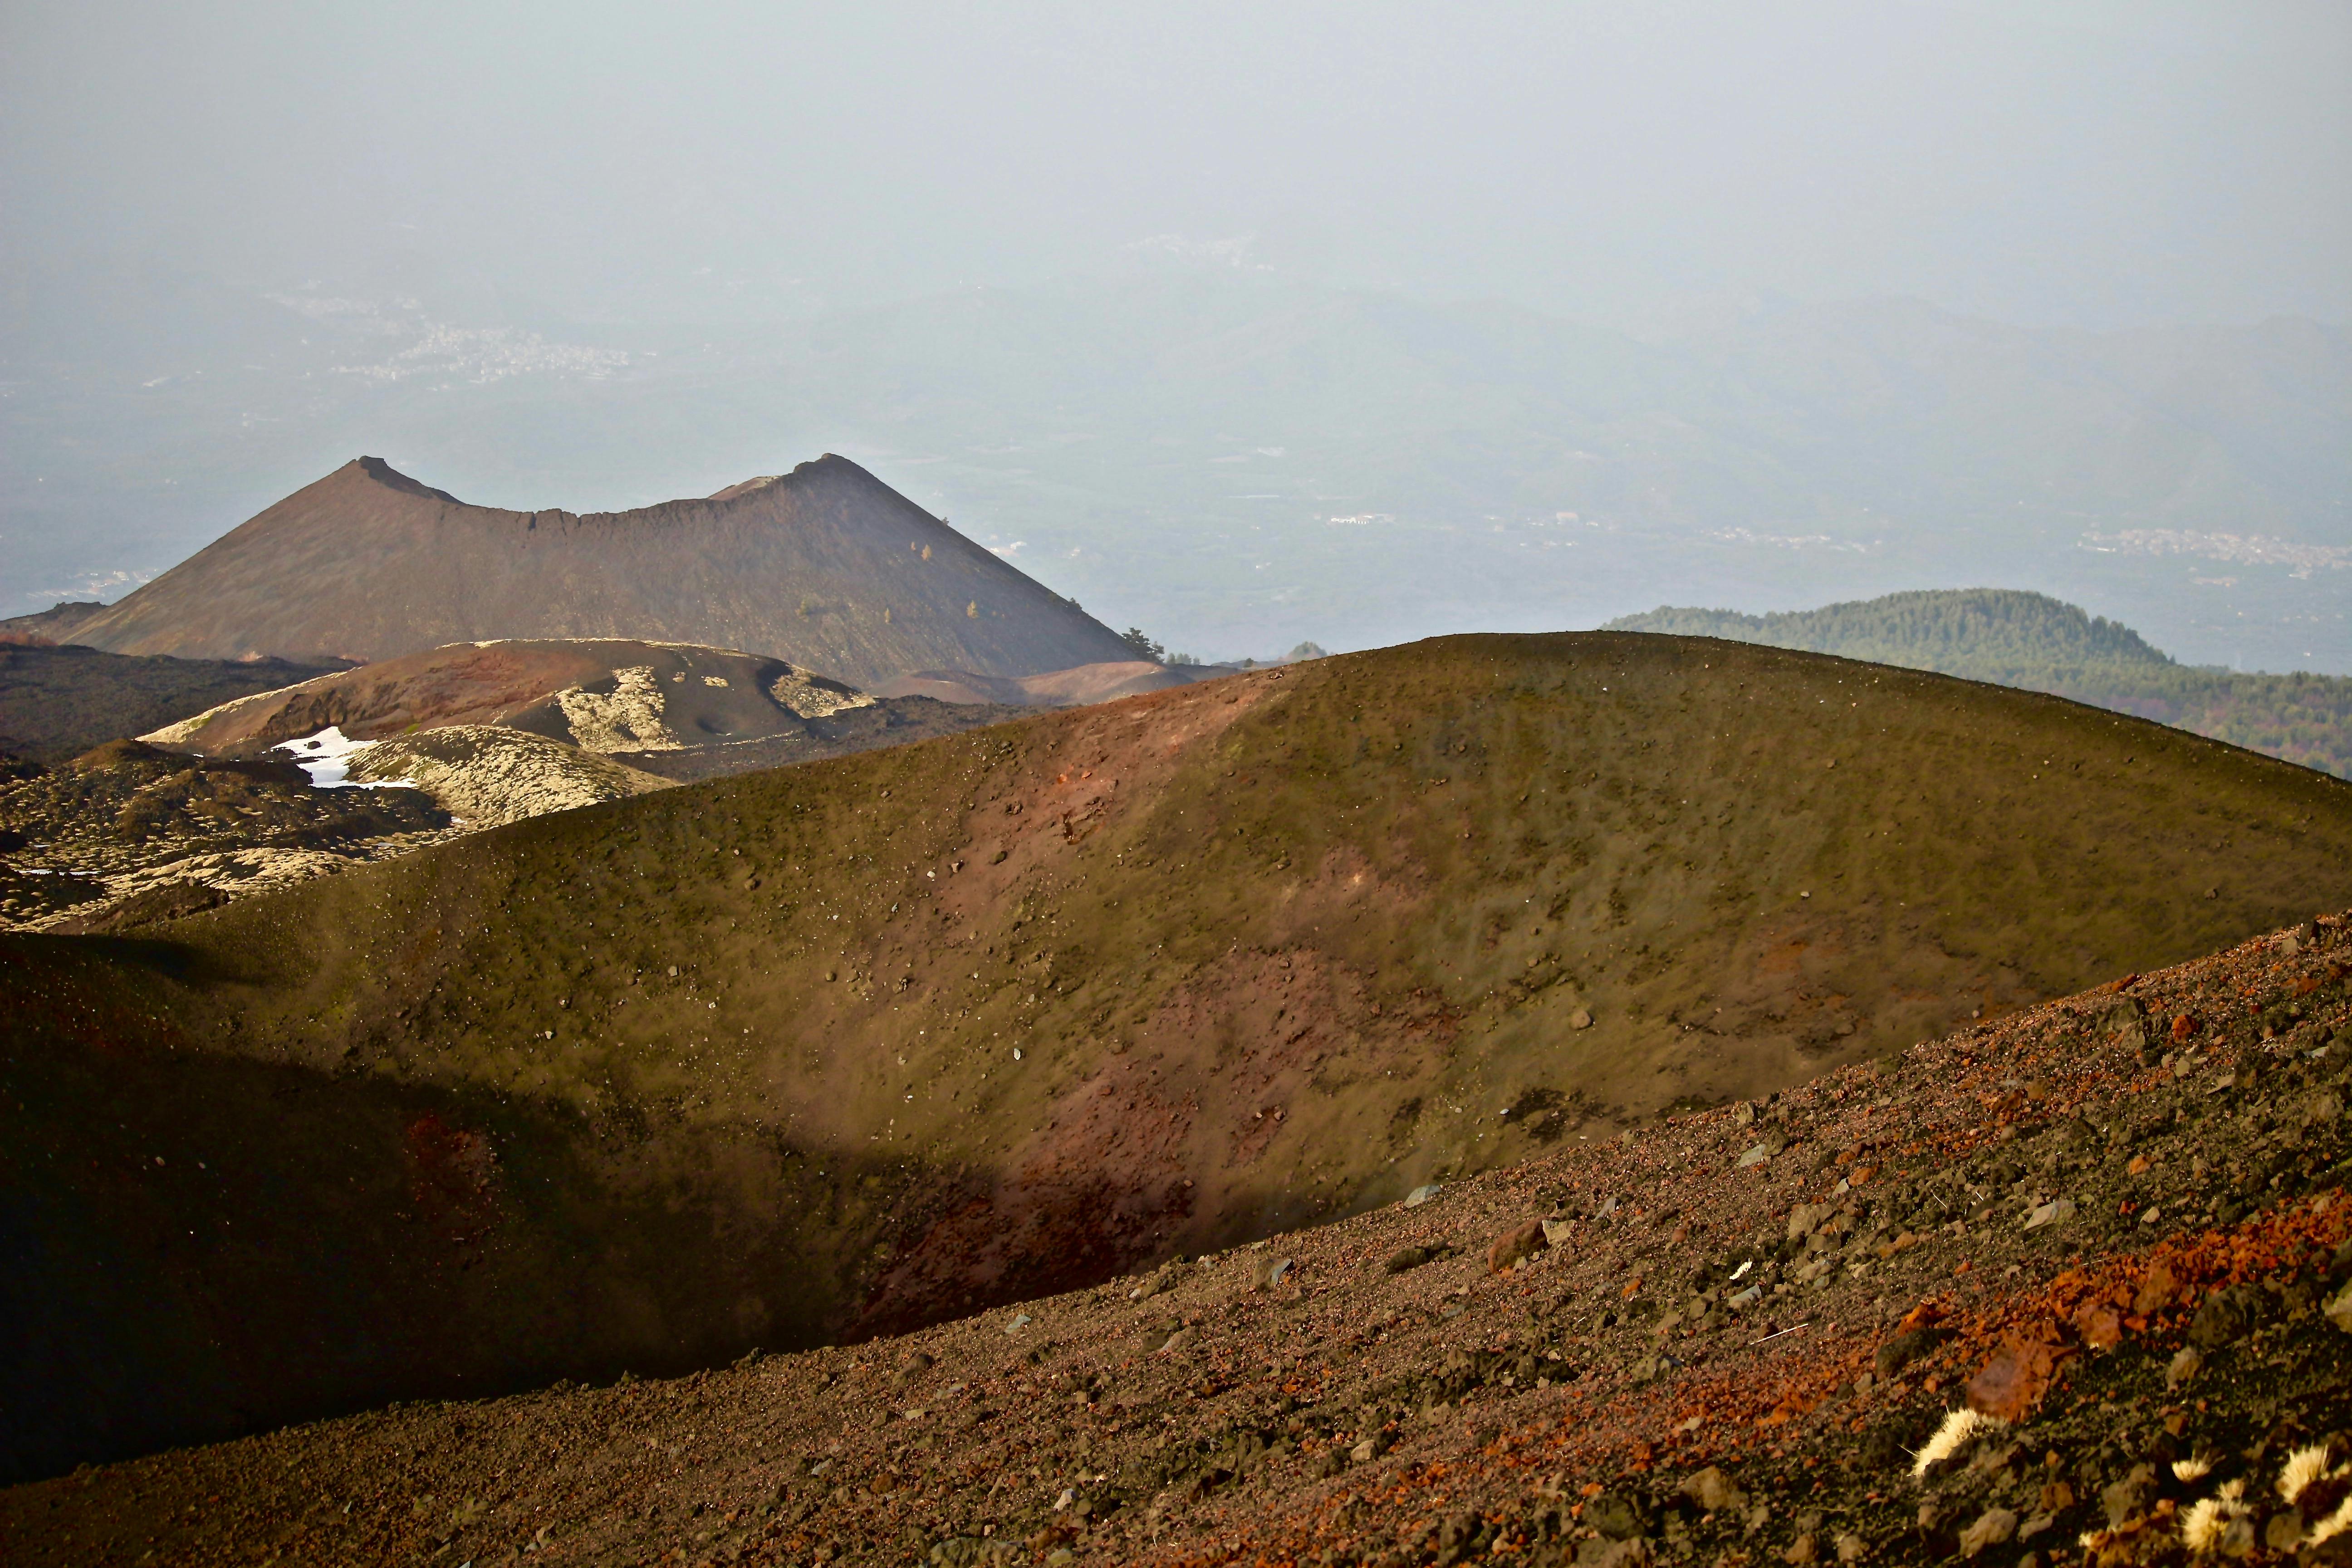 Excursão de trekking guiada às crateras do Etna